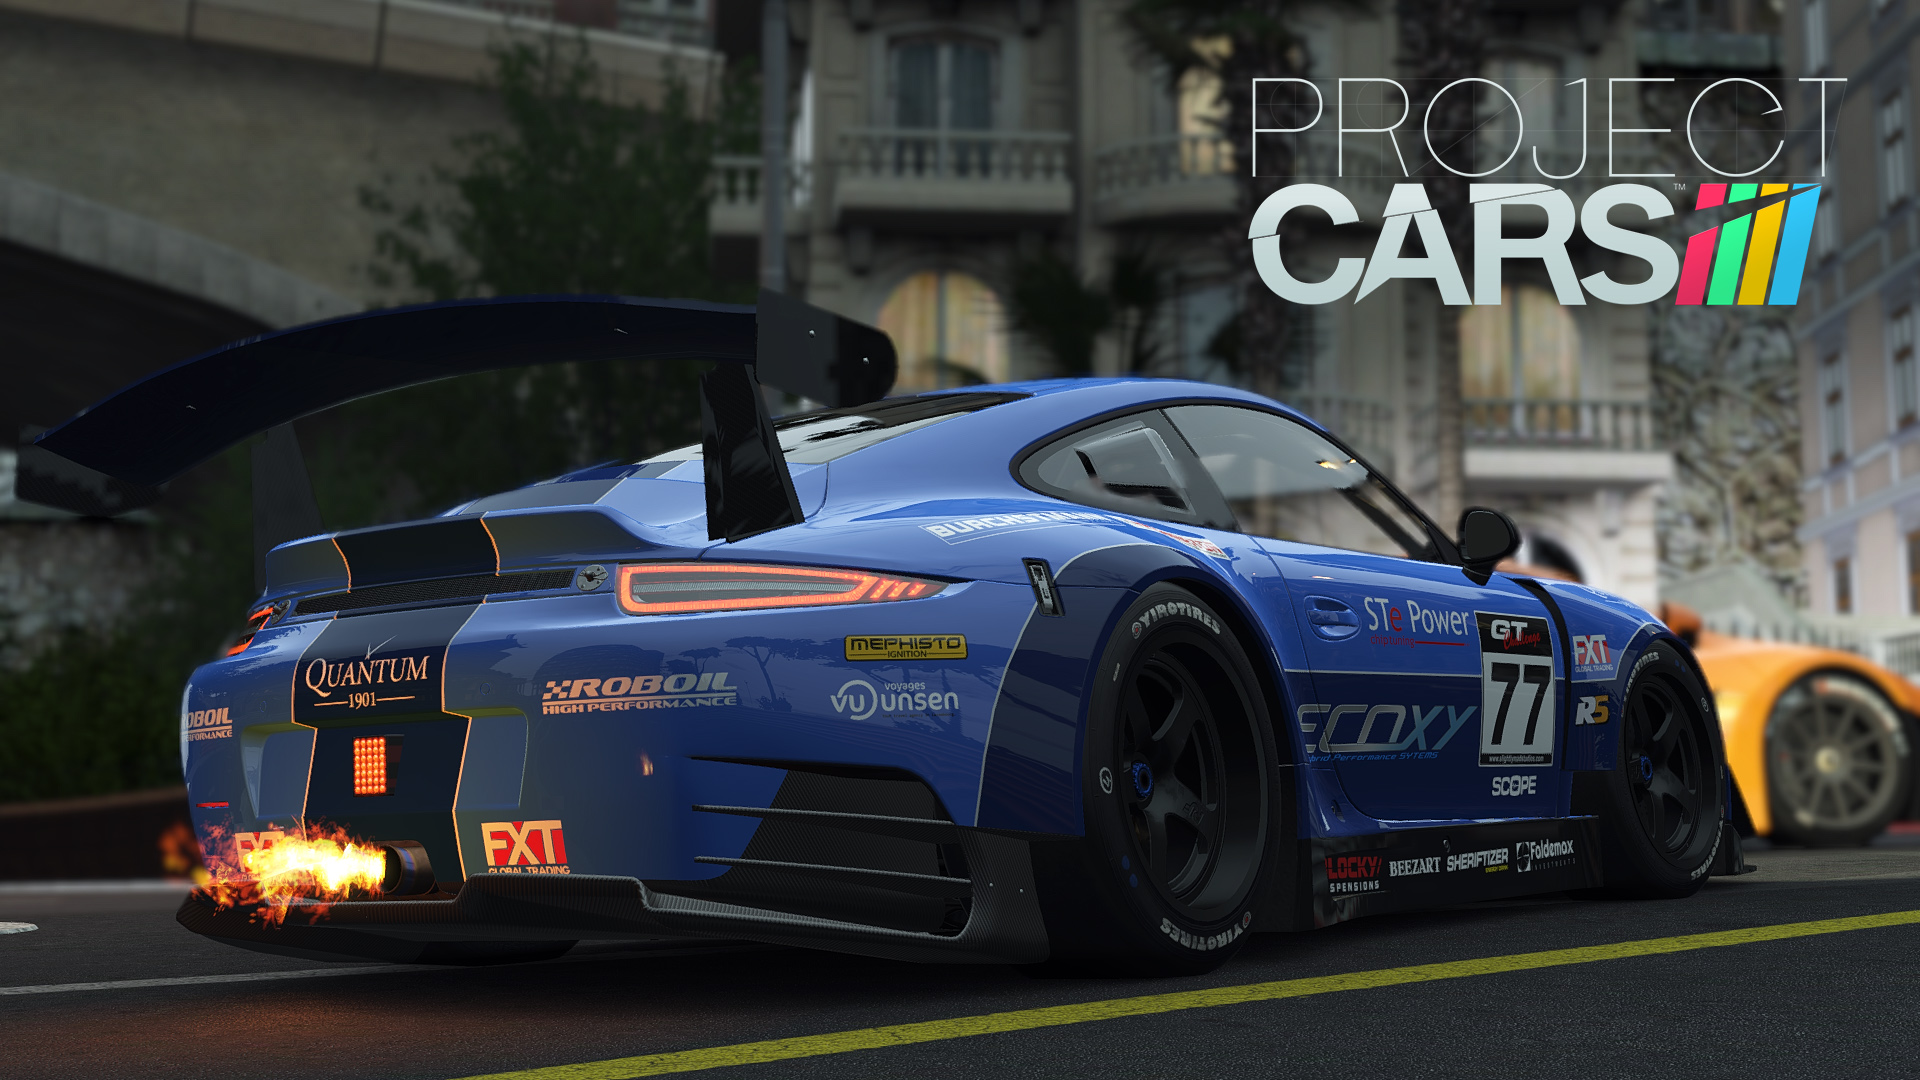 矚目賽車遊戲新作 賽車計畫 海外評論整理迎頭趕上gt 以及forza Project Cars 巴哈姆特